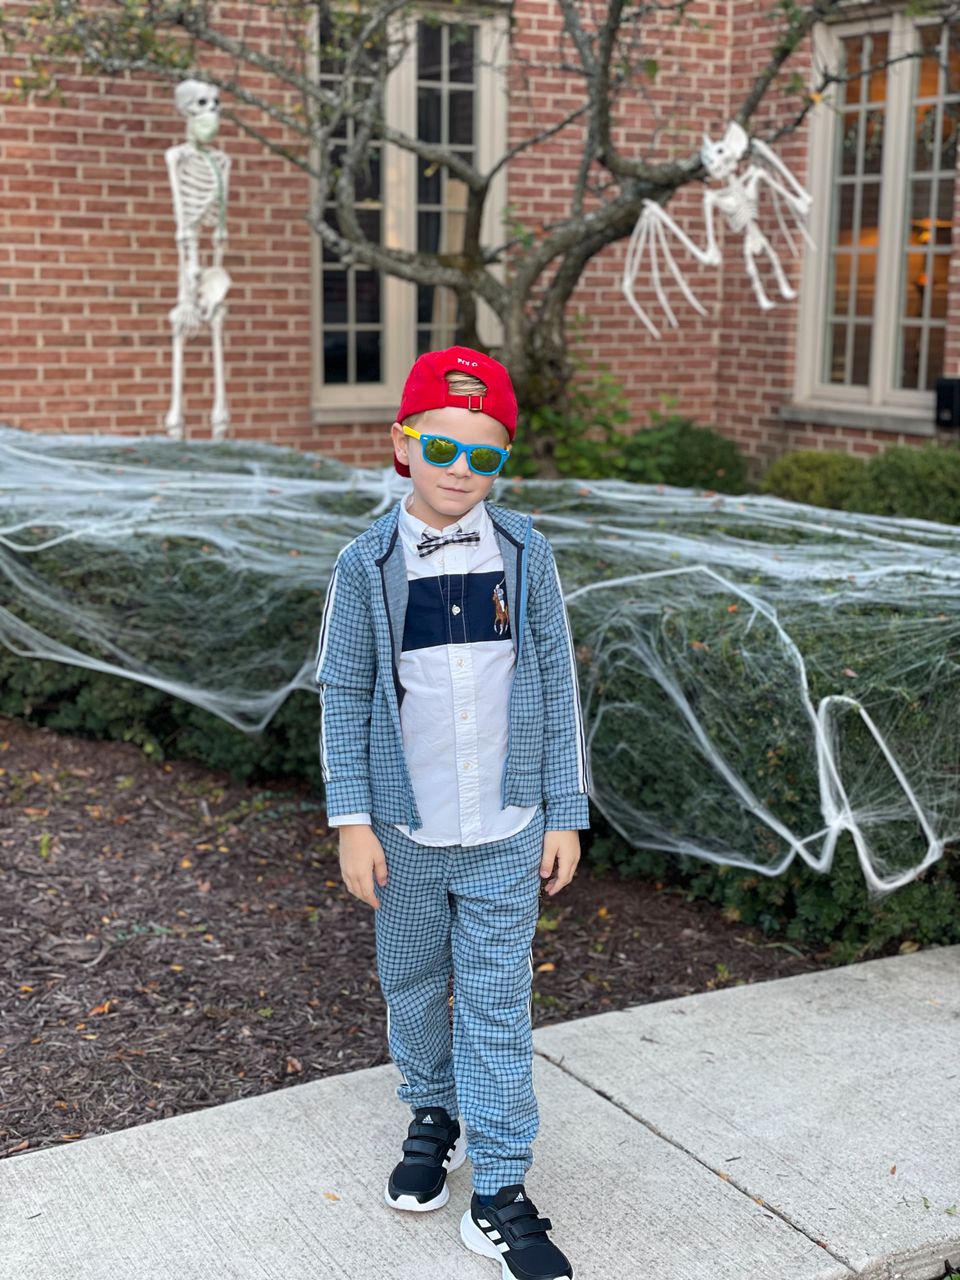 En gutt i en blå dress med ruter, rød caps pg blåe solbriller står foran et hus. Bak han er hagen pyntet med hvite spøkelser og hvitt spindelvev til halloween. 